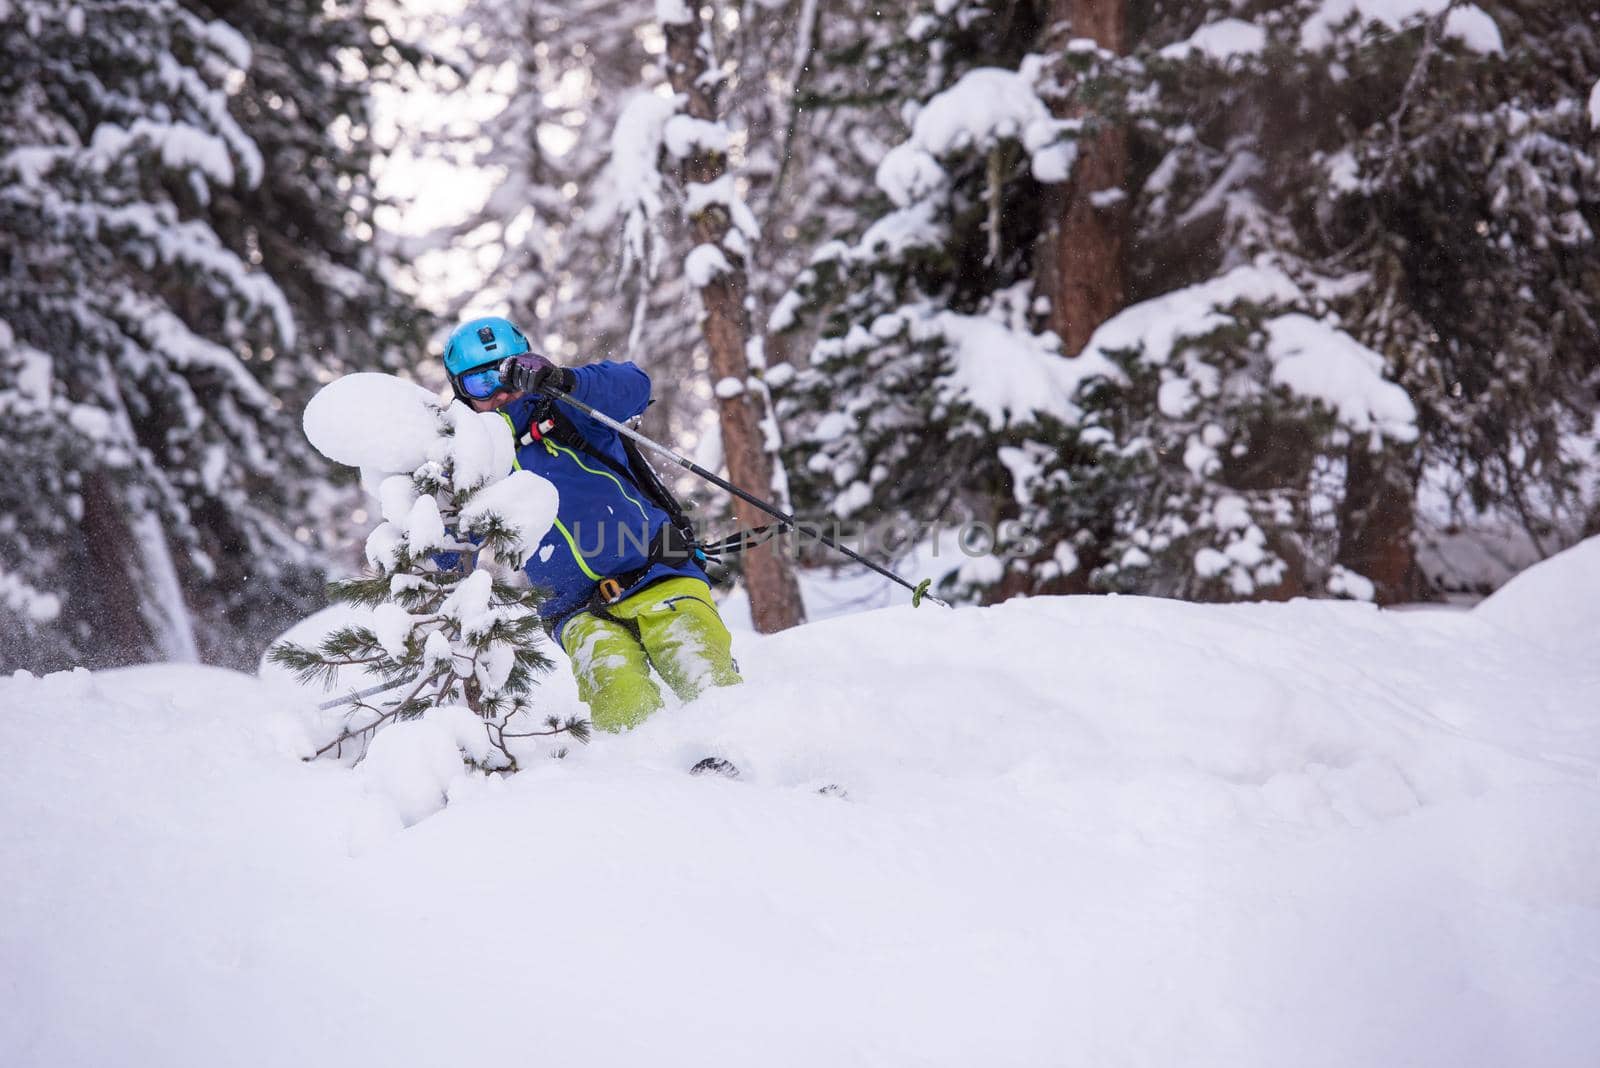 freeride skier skiing downhill by dotshock